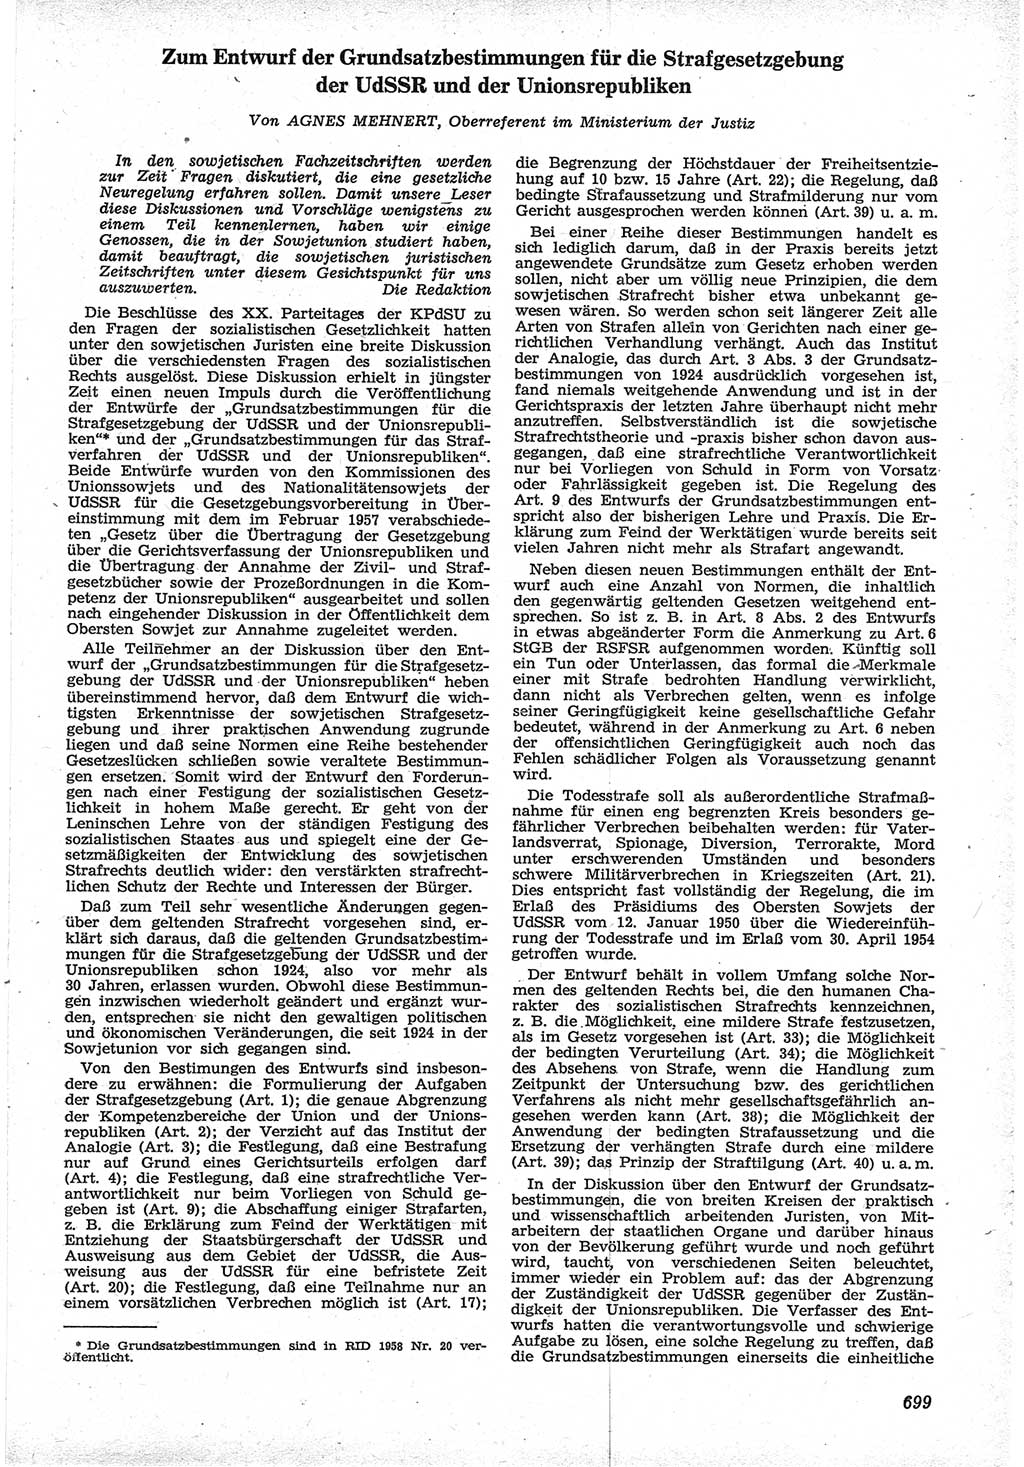 Neue Justiz (NJ), Zeitschrift für Recht und Rechtswissenschaft [Deutsche Demokratische Republik (DDR)], 12. Jahrgang 1958, Seite 699 (NJ DDR 1958, S. 699)